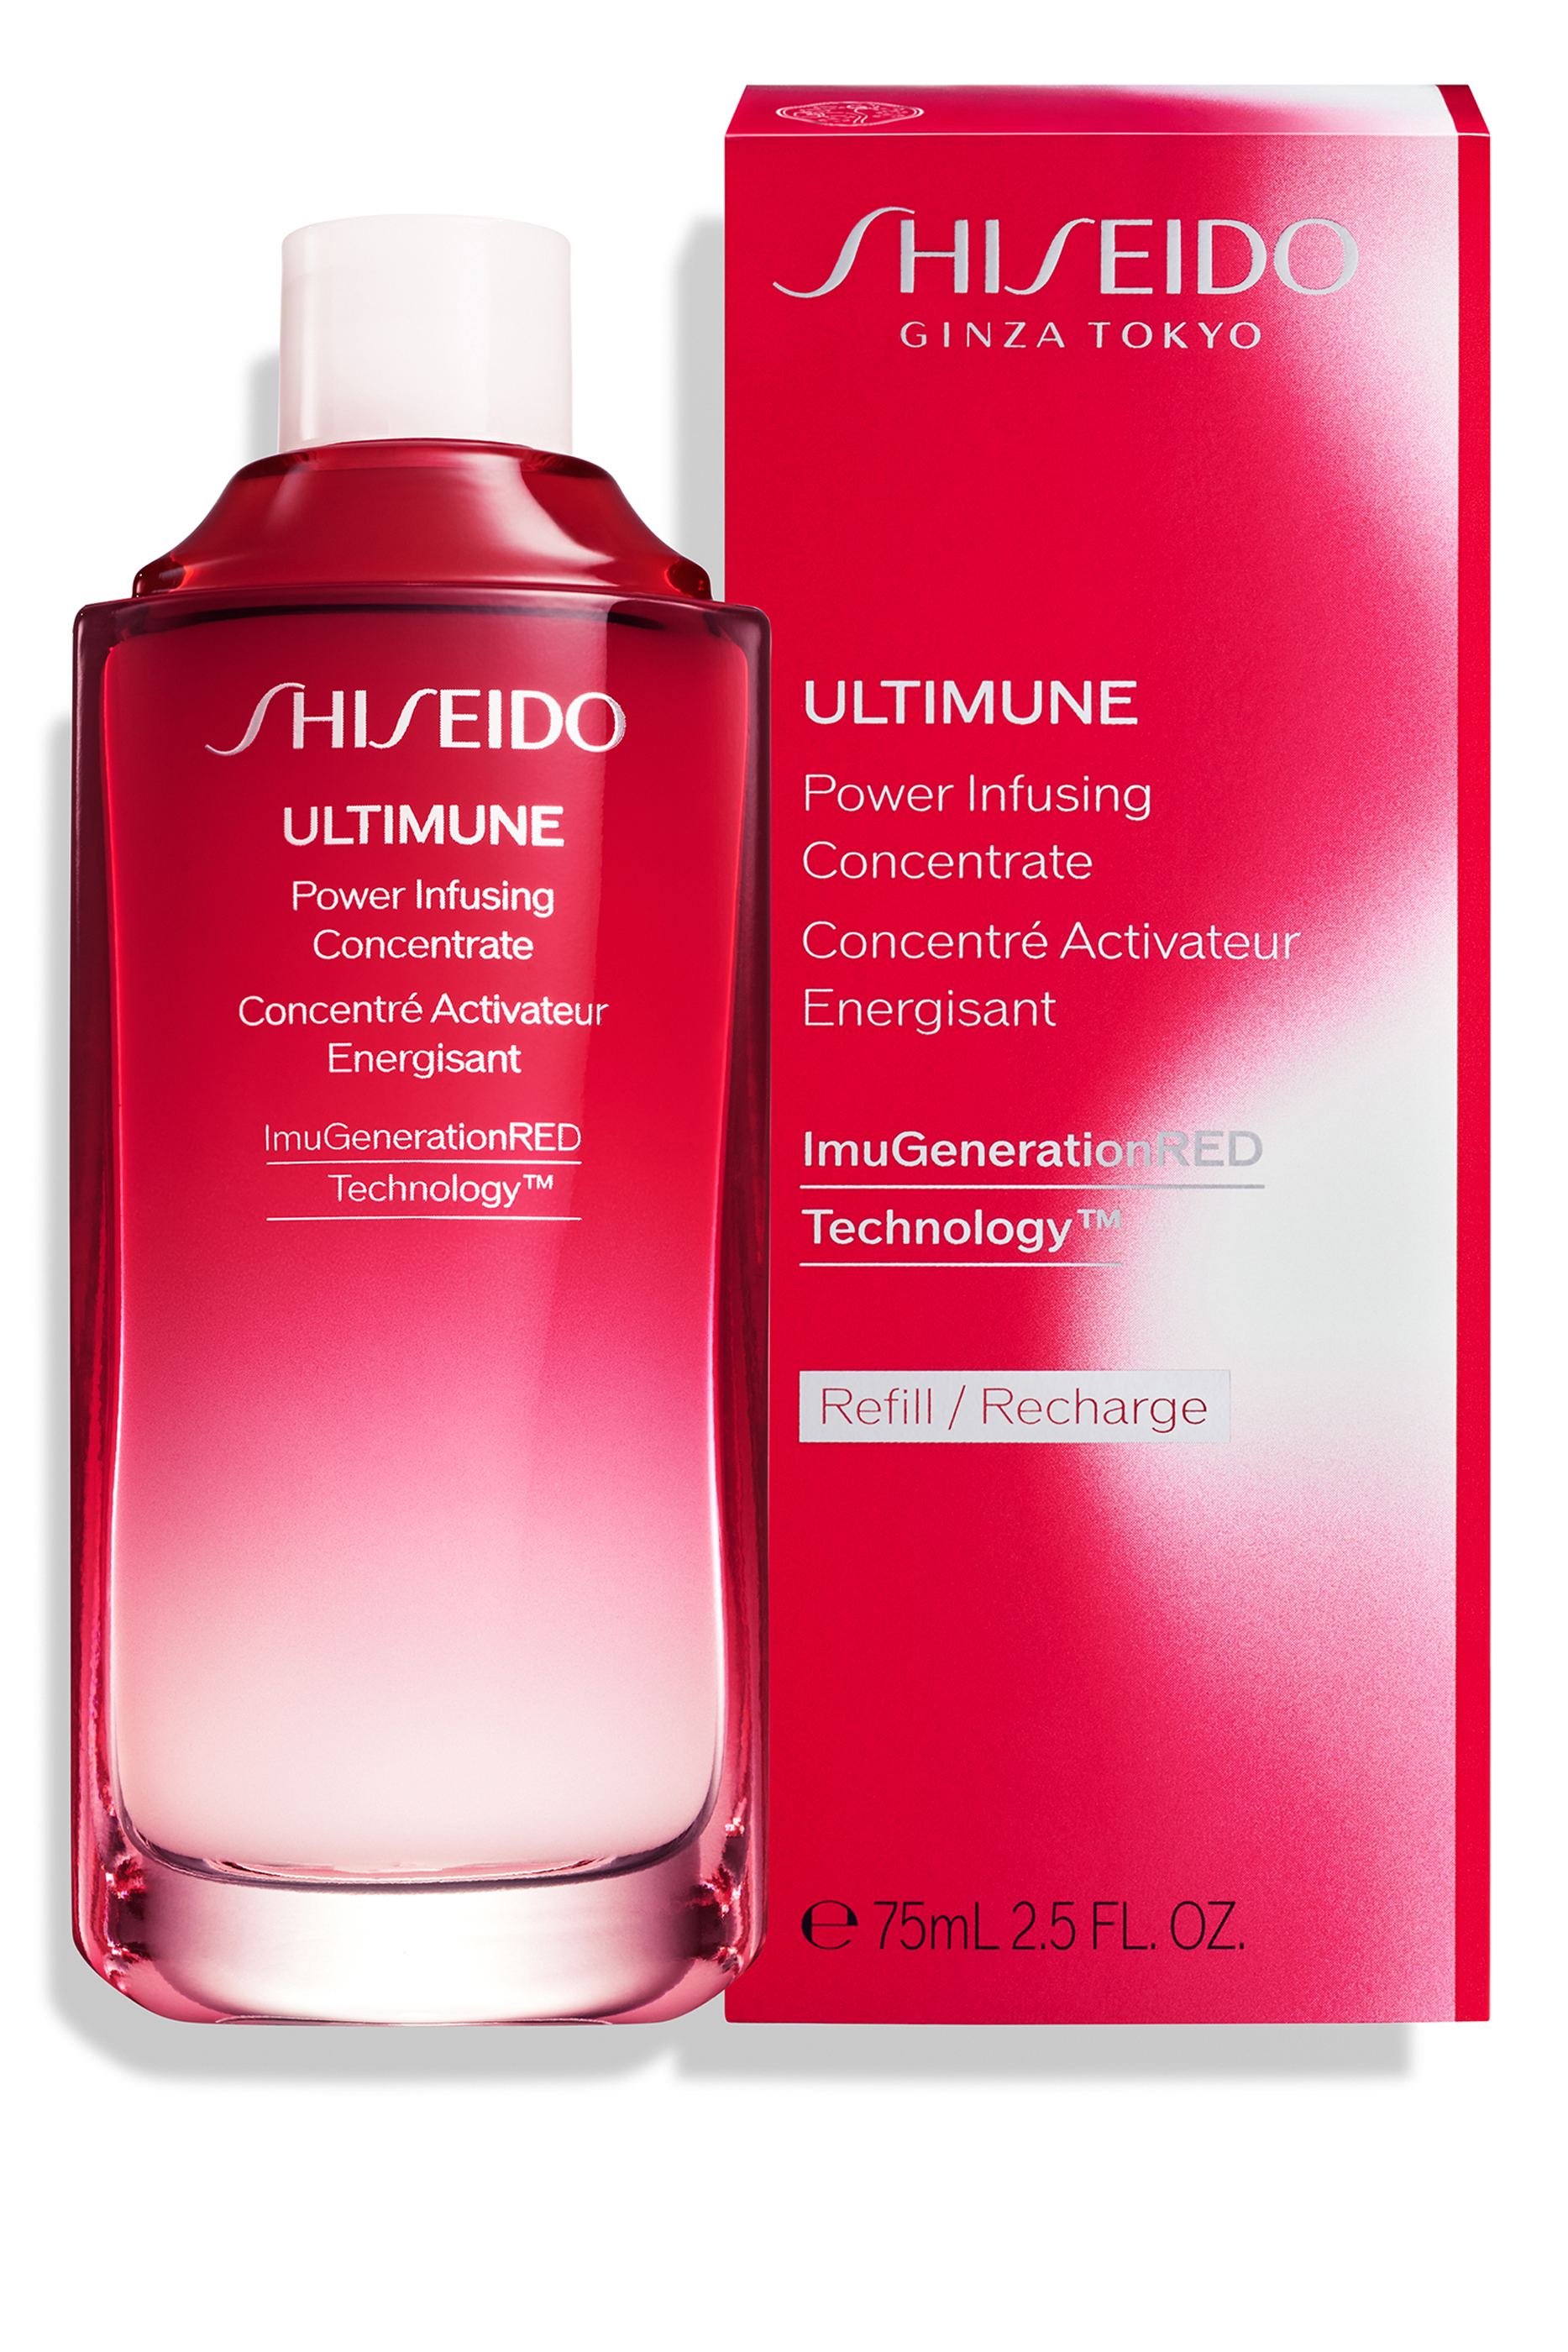 Ultimune концентрат. Ultimune концентрат шисейдо. Ultimune концентрат шисейдо Power infusing. Shiseido Ultimune концентрат, восстанавливающий энергию кожи. Рефил Ultimune концентрат восстанавливающий.